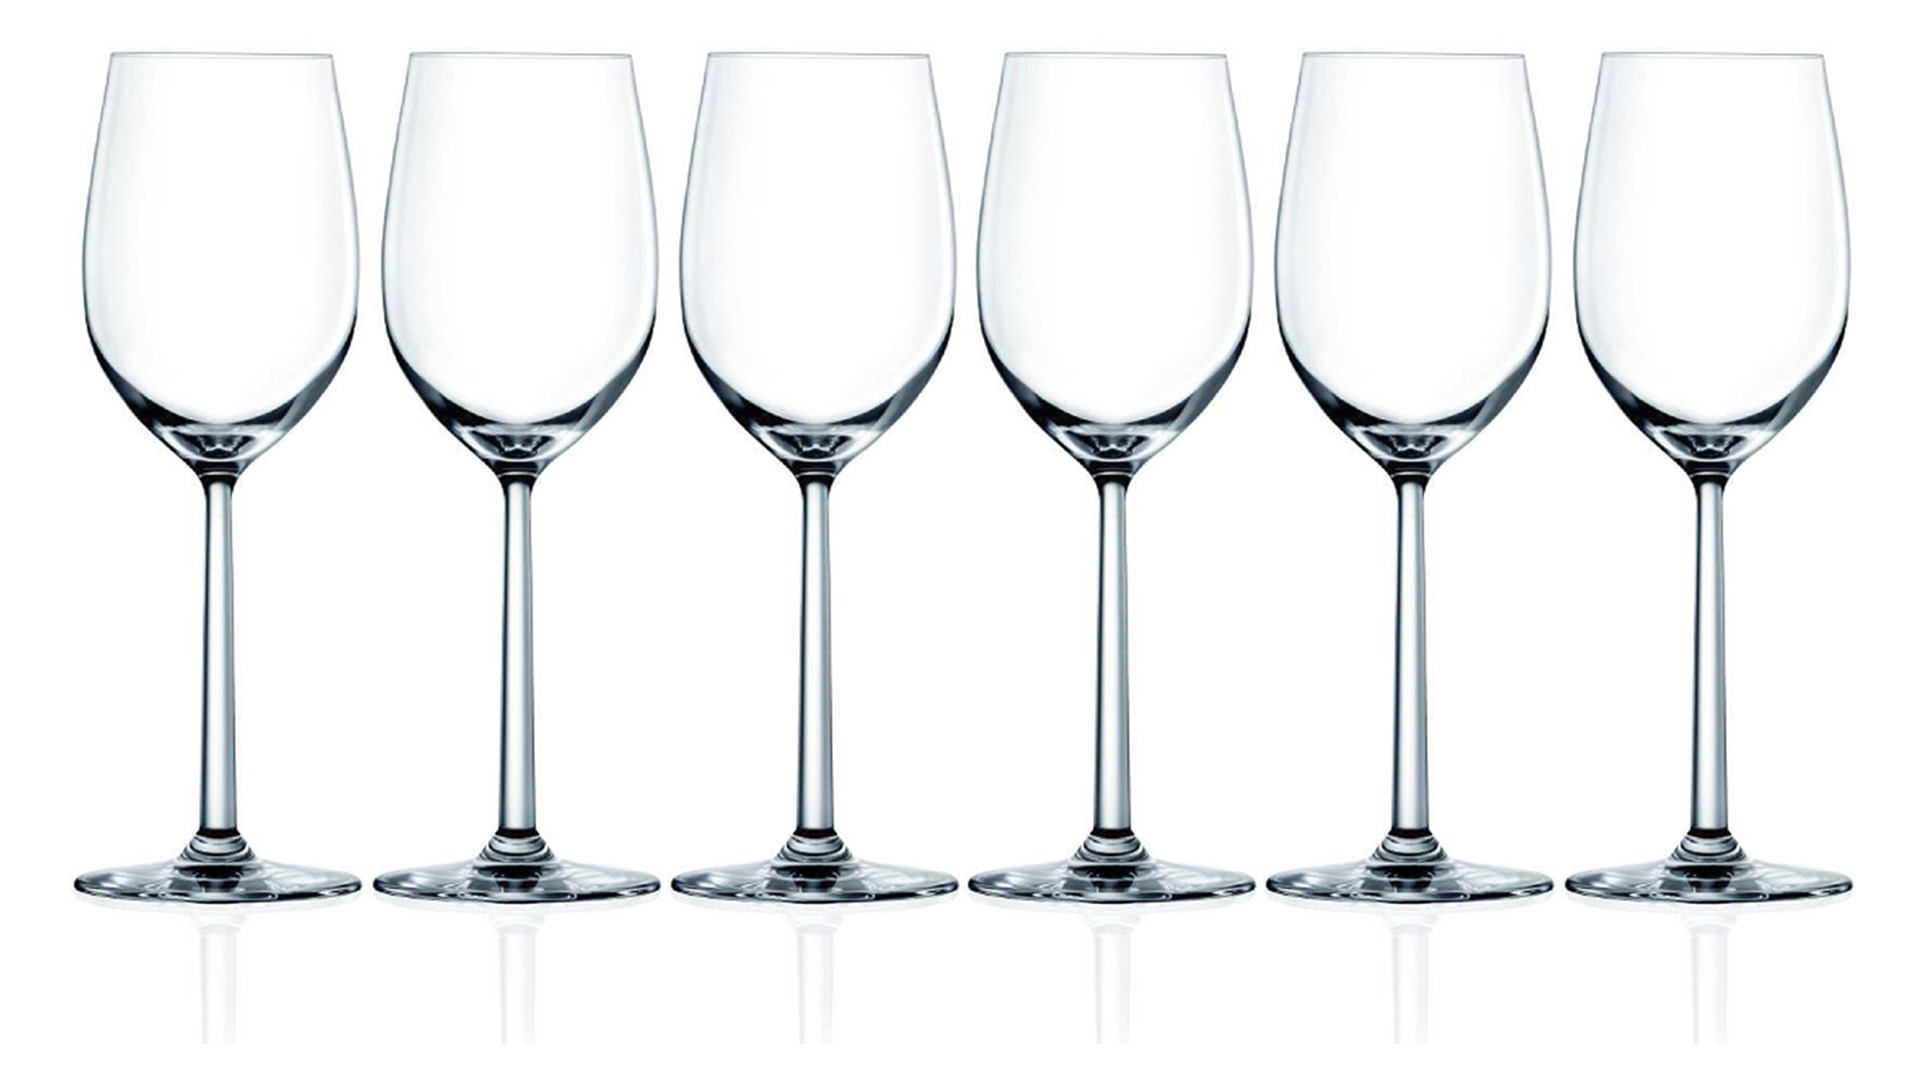 Набор бокалов для белого вина Lucaris Shanghai Soul 405 мл, 6 шт, стекло хрустальное